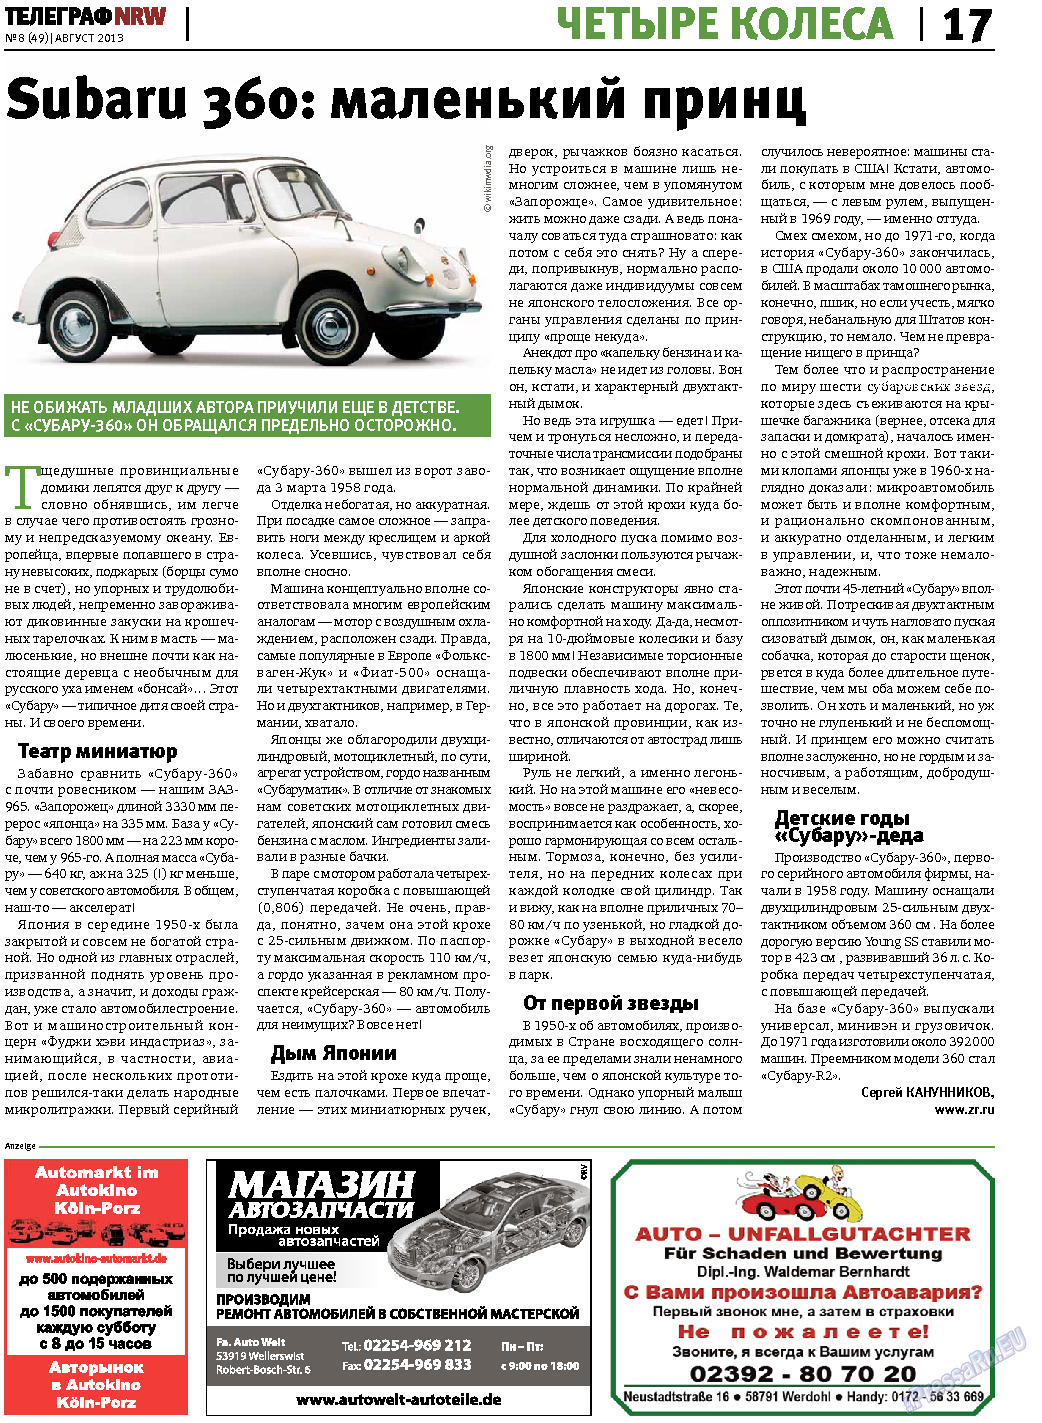 Телеграф NRW (газета). 2013 год, номер 8, стр. 17